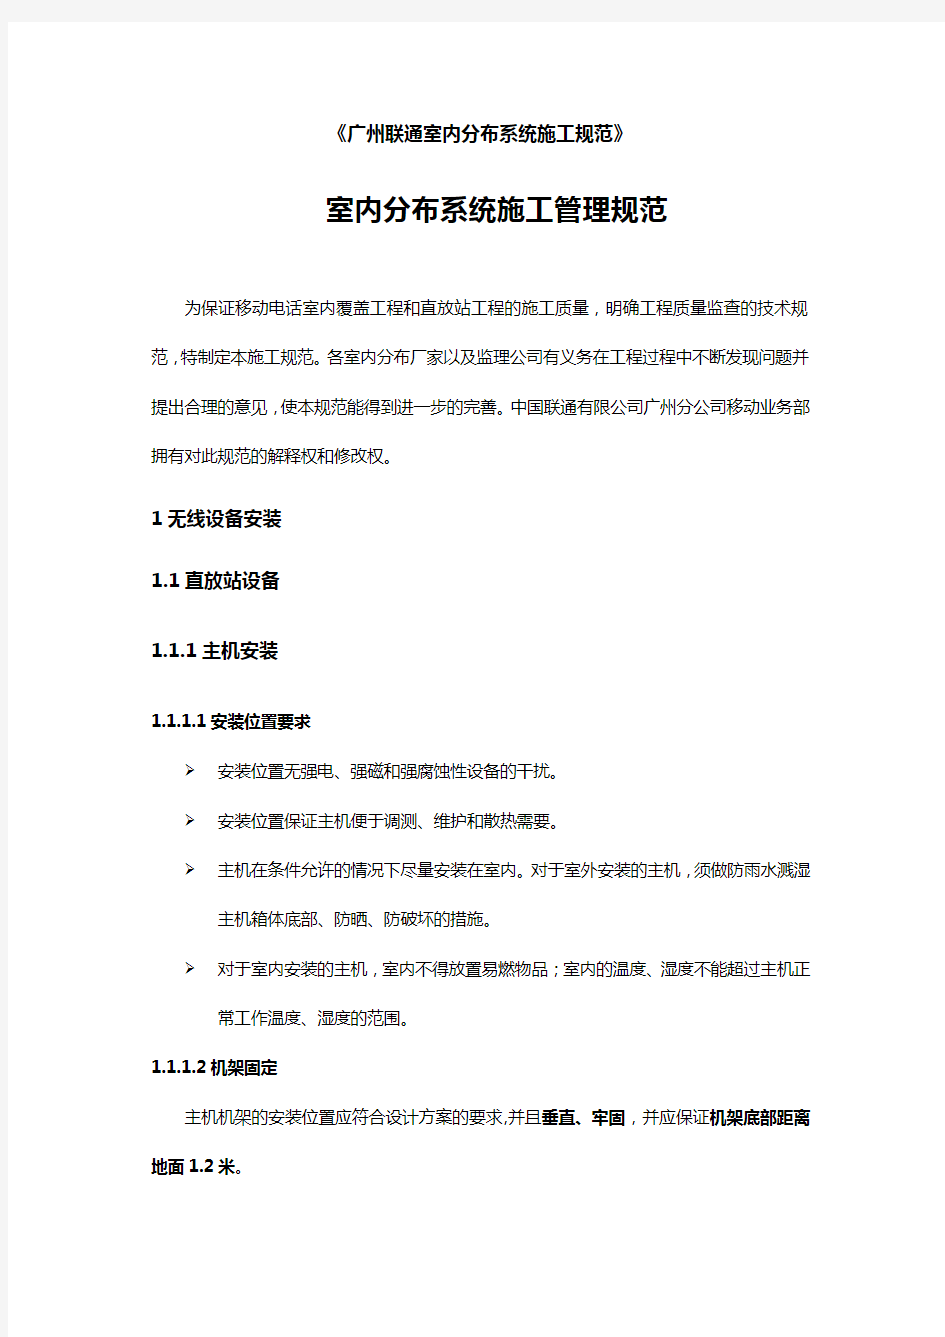 【建筑工程管理】广州联通室内分布系统施工规范